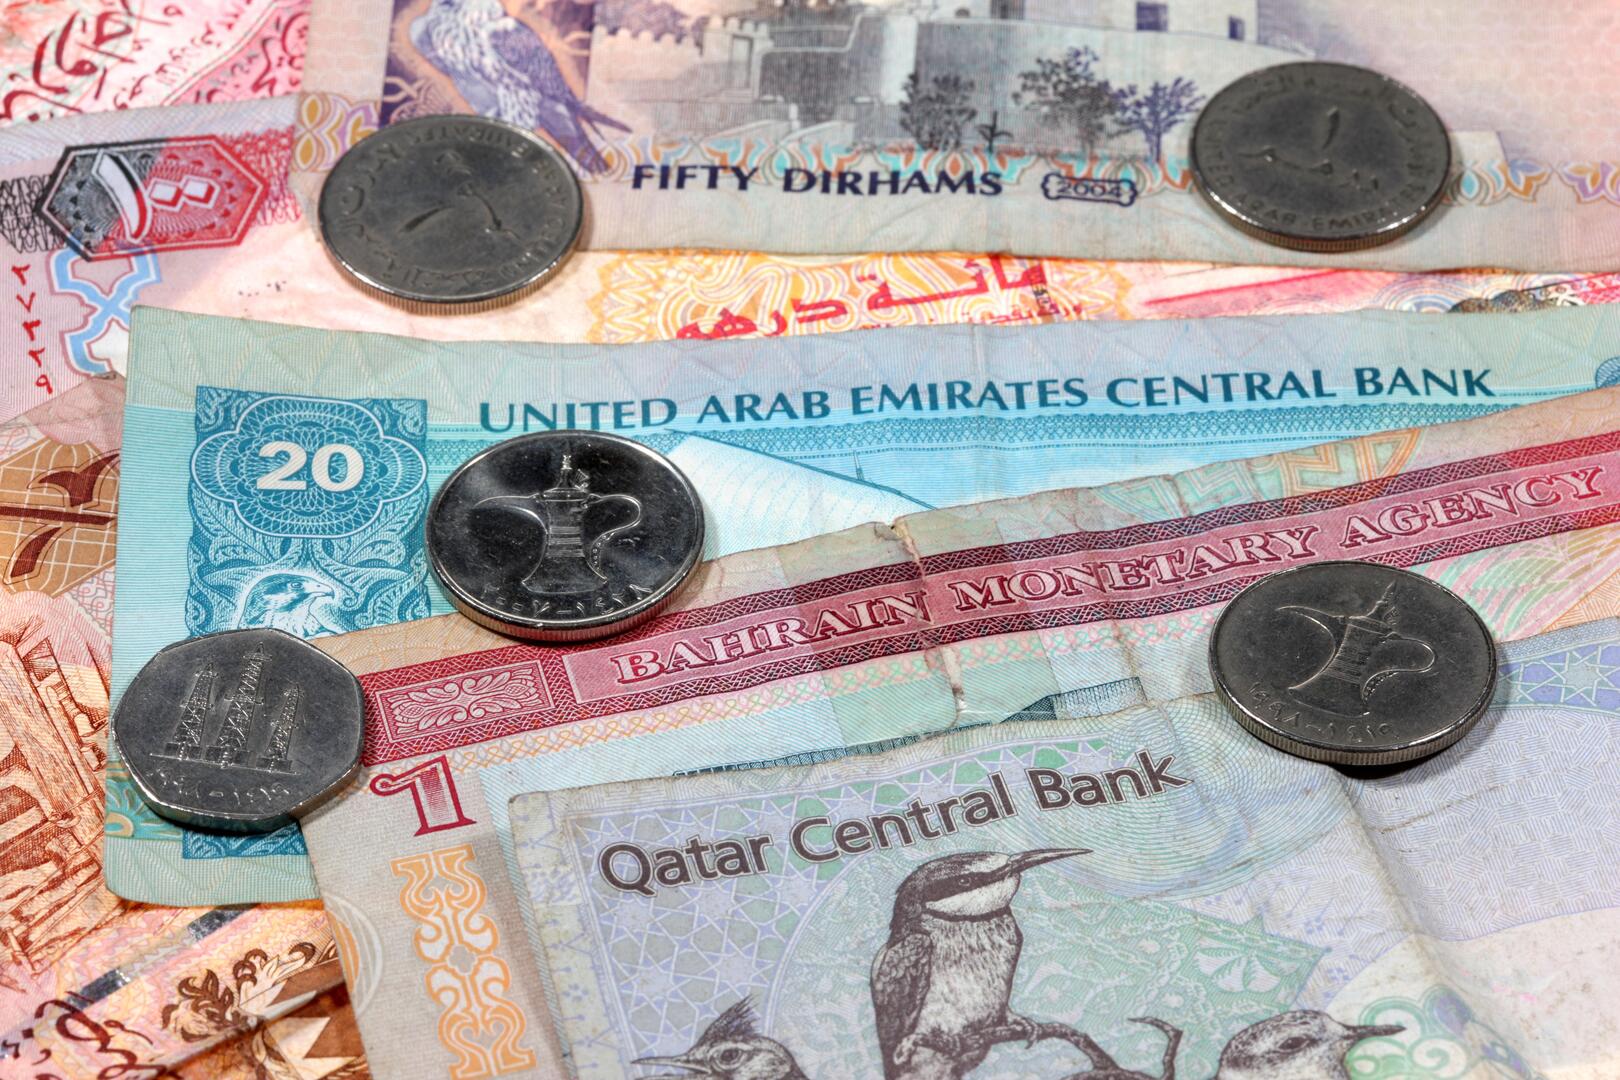 مصرف قطر المركزي يصدر أذونات خزينة بقيمة 5 مليارات ريال